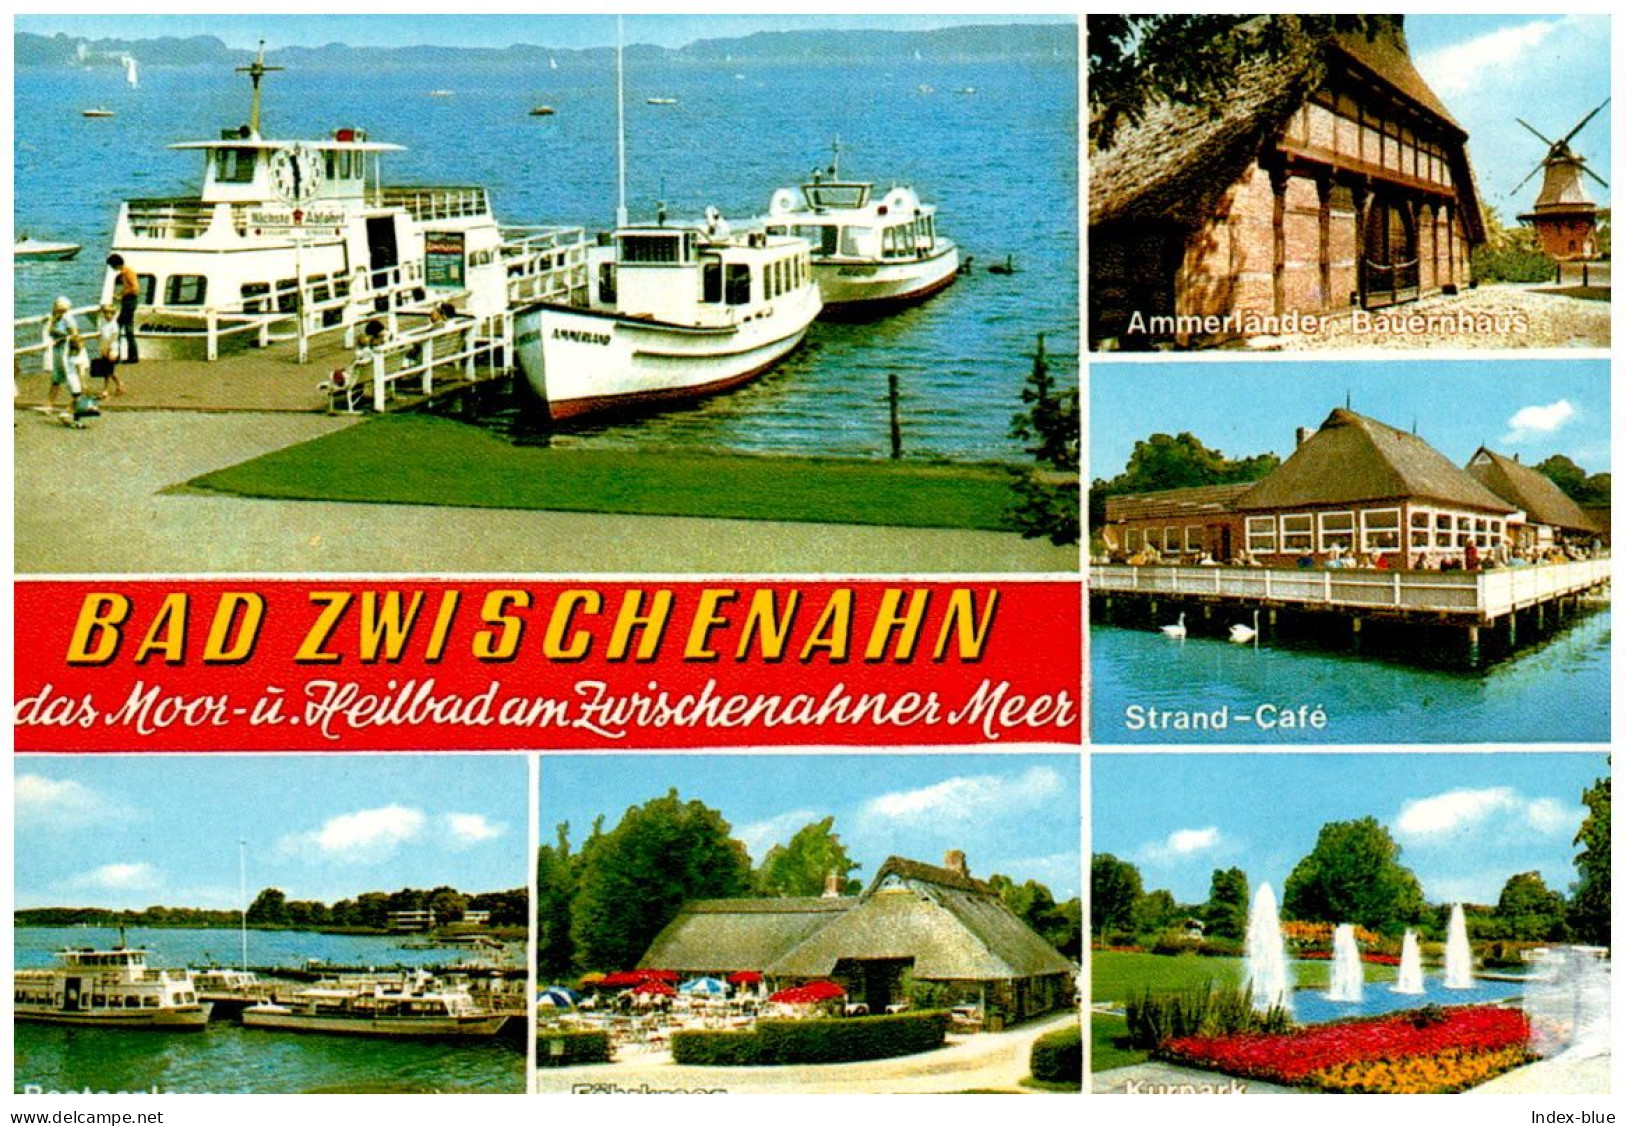 AK - Bad Zwischenahn - Bootsanleger, Strand-Cafe, Kurpark, Fährkroog, Ammerländer Bauernhaus - Nicht Gelaufen - Bad Zwischenahn